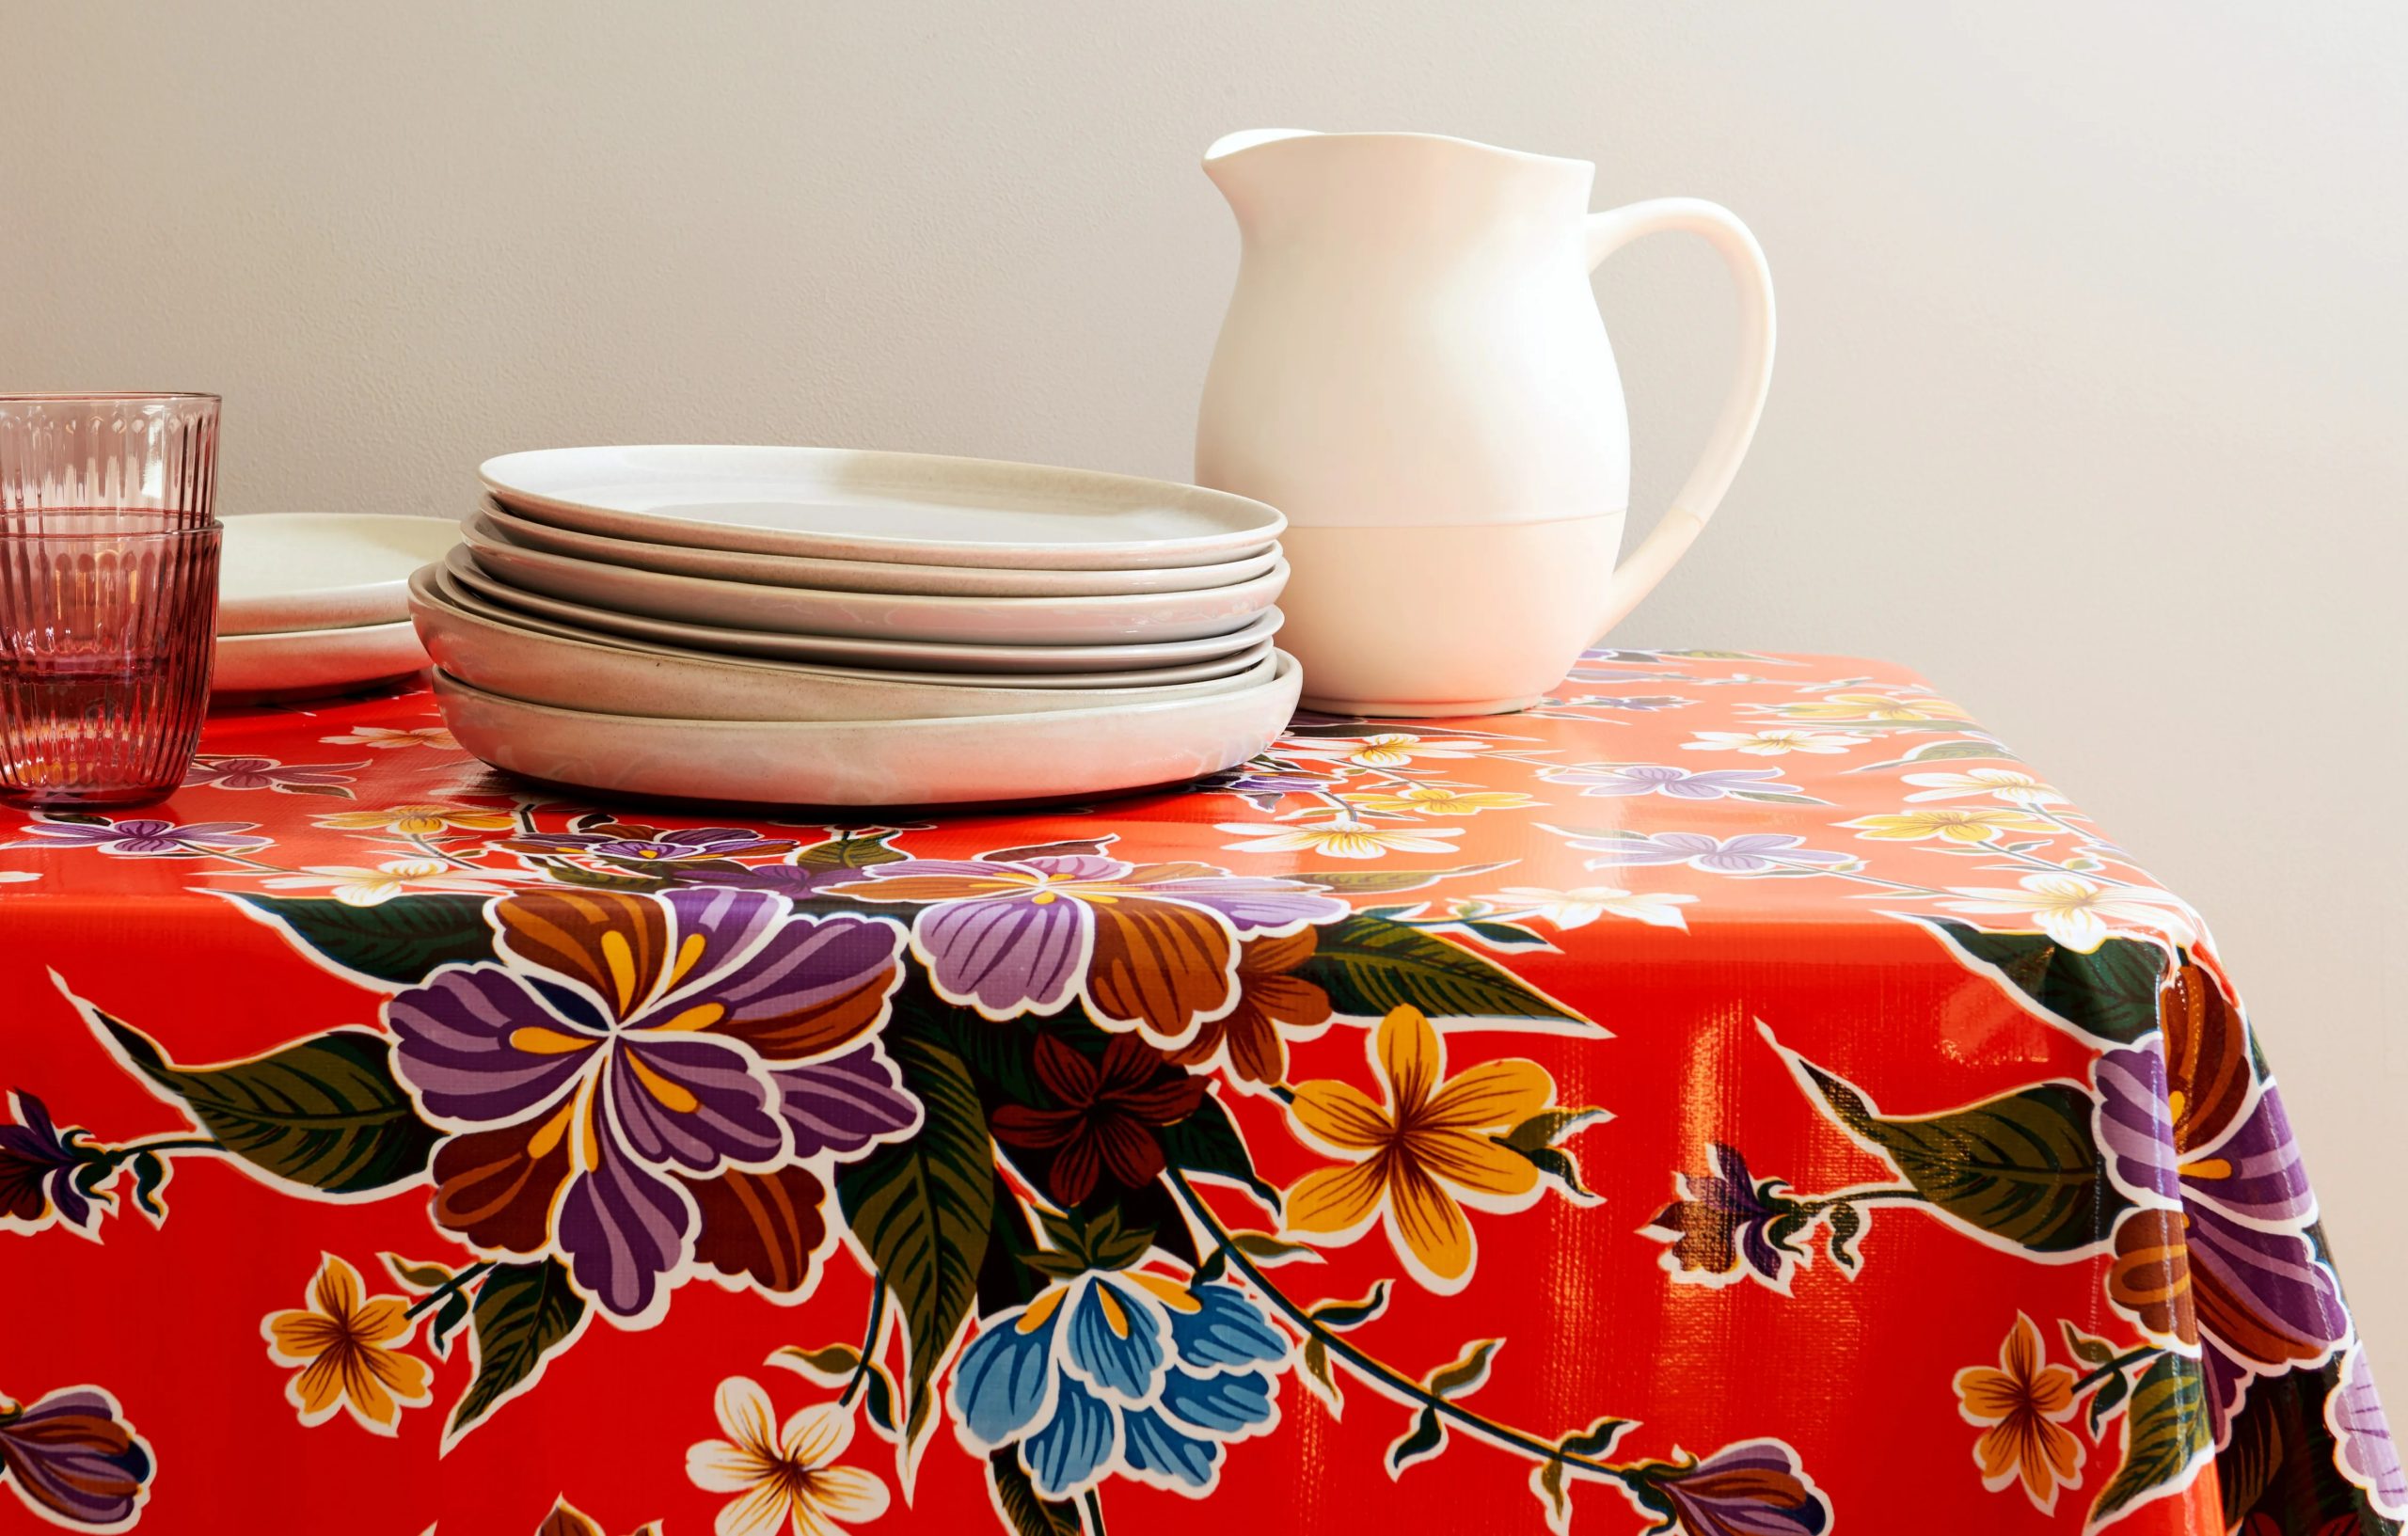 رومیزی آشپزخانه - رومیزی مناسب میز